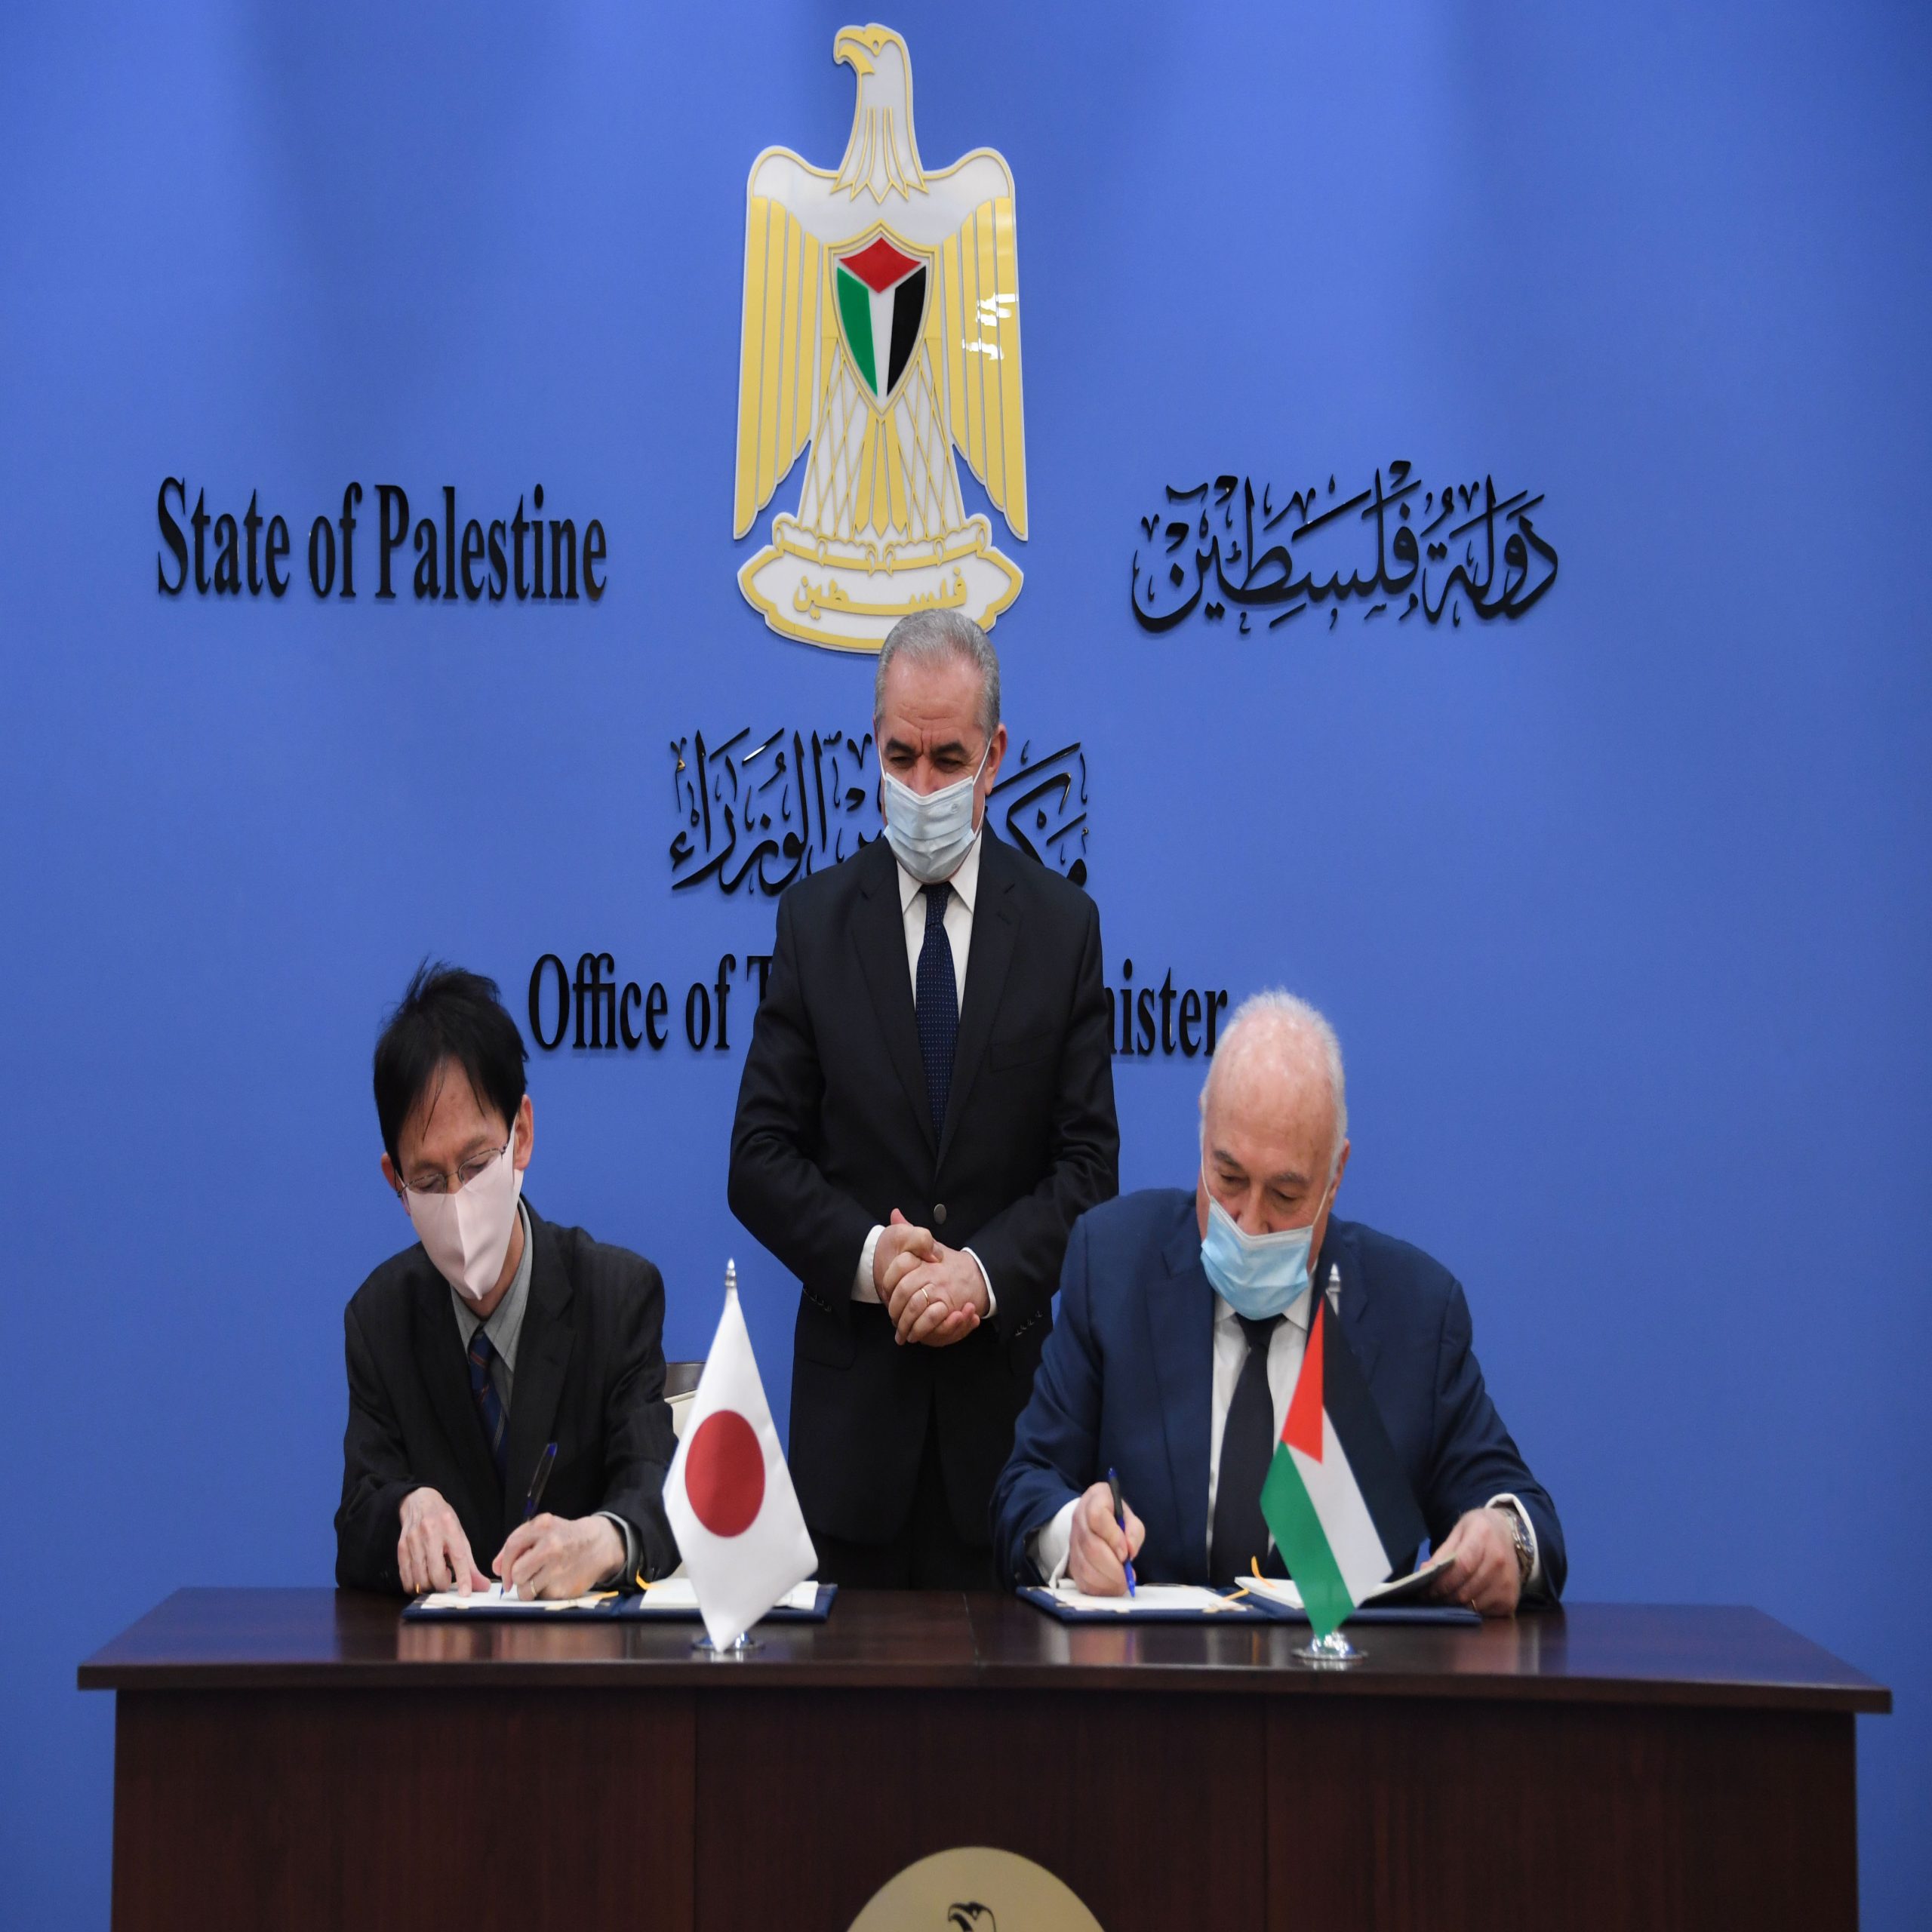 توقيع اتفاقية دعم ياباني للموازنة العامة بقيمة 10 ملايين دولار